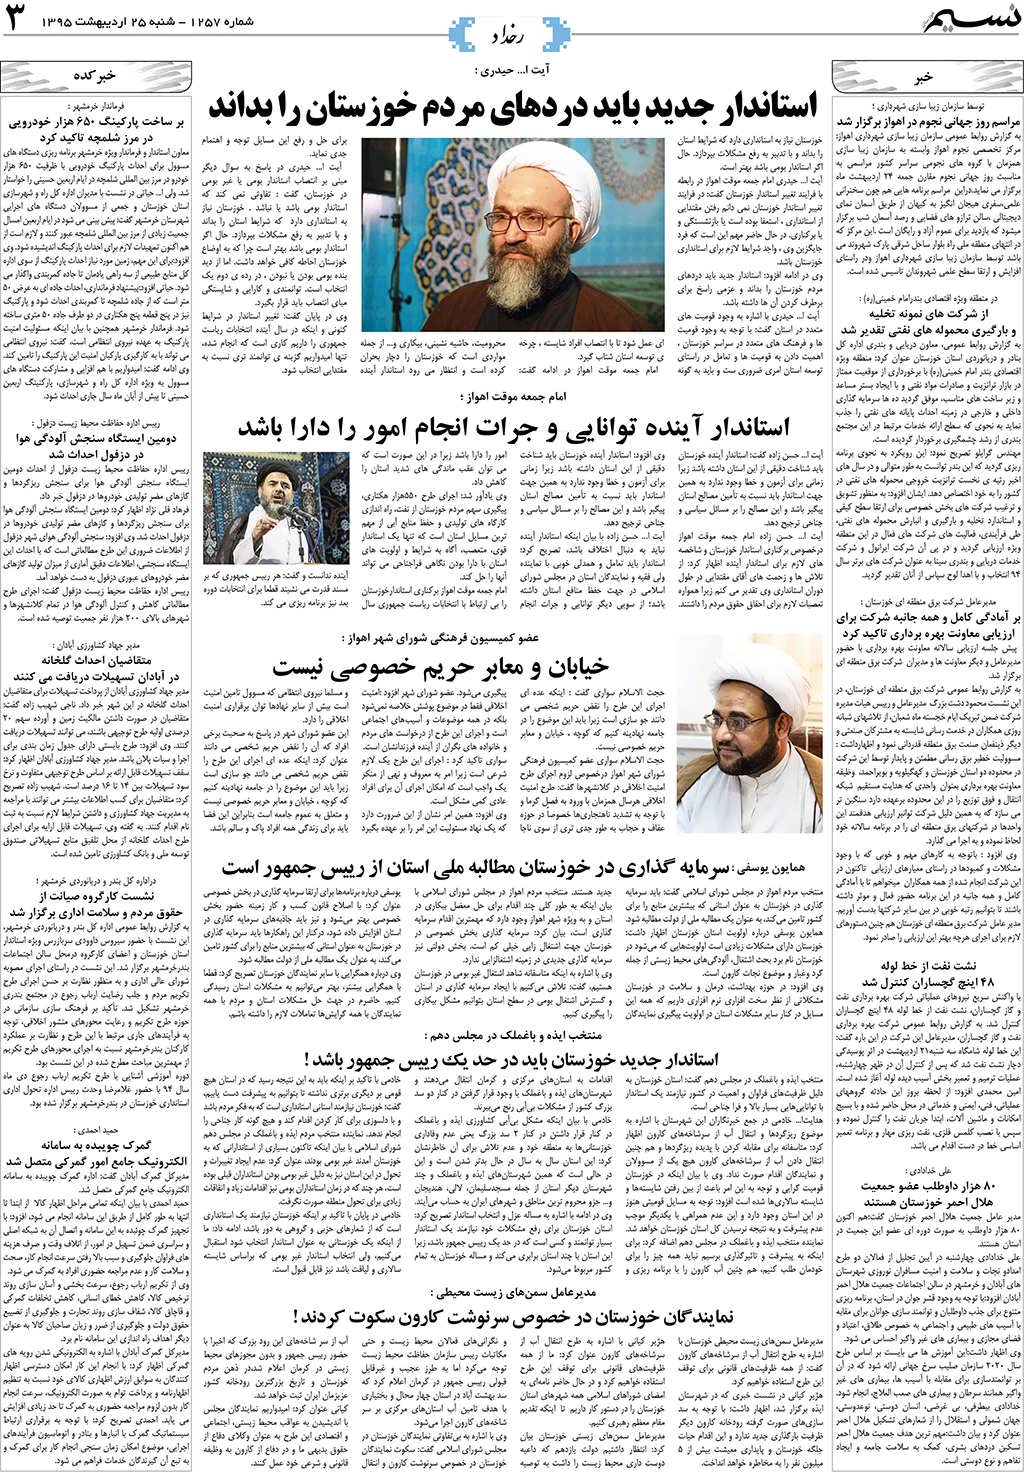 صفحه رخداد روزنامه نسیم شماره 1257